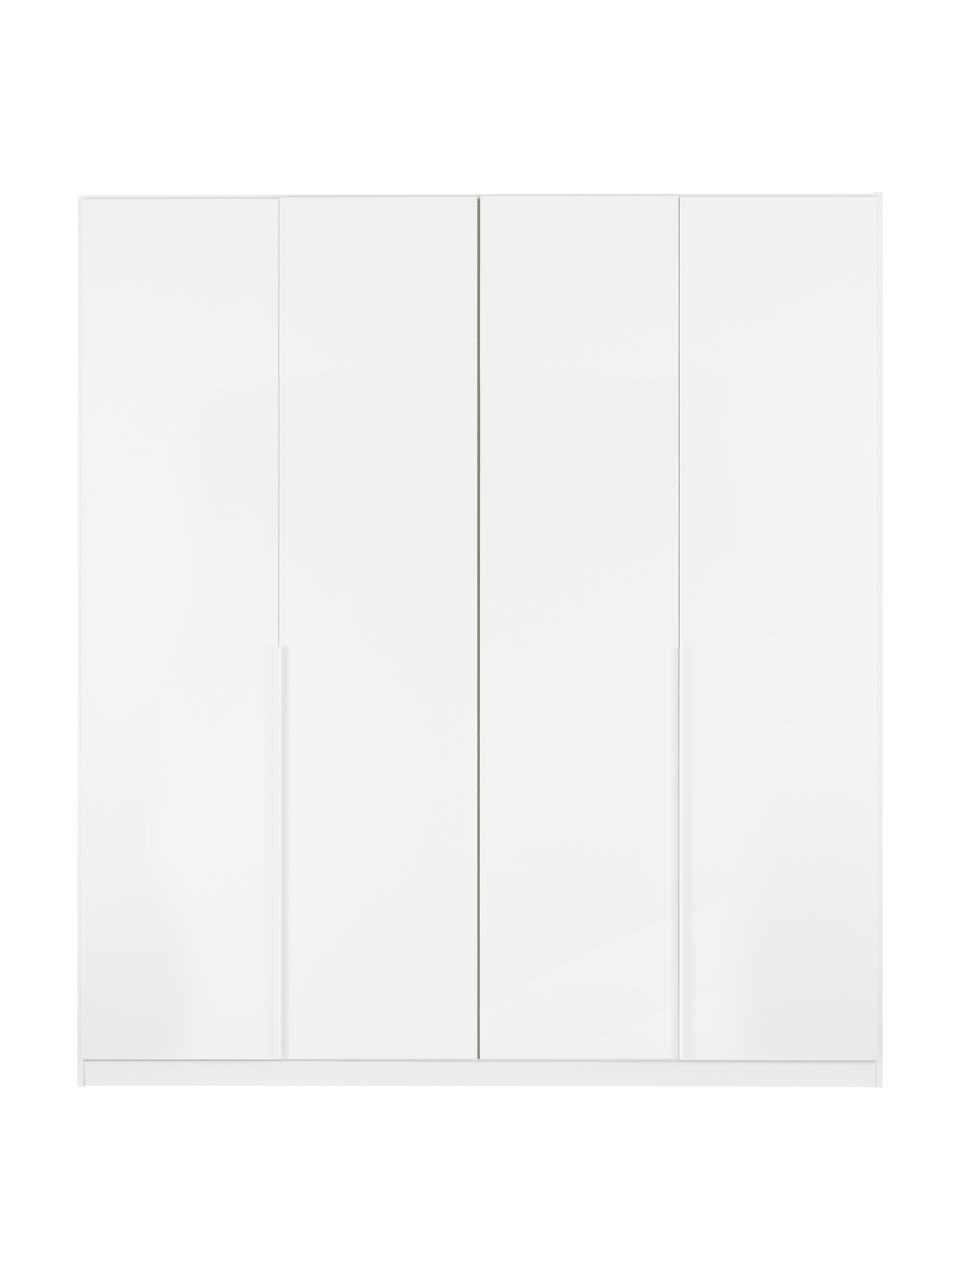 Drehtürenschrank Mia in Weiß, 4-türig, Holzwerkstoff, beschichtet, Holz, B 181 x H 210 cm